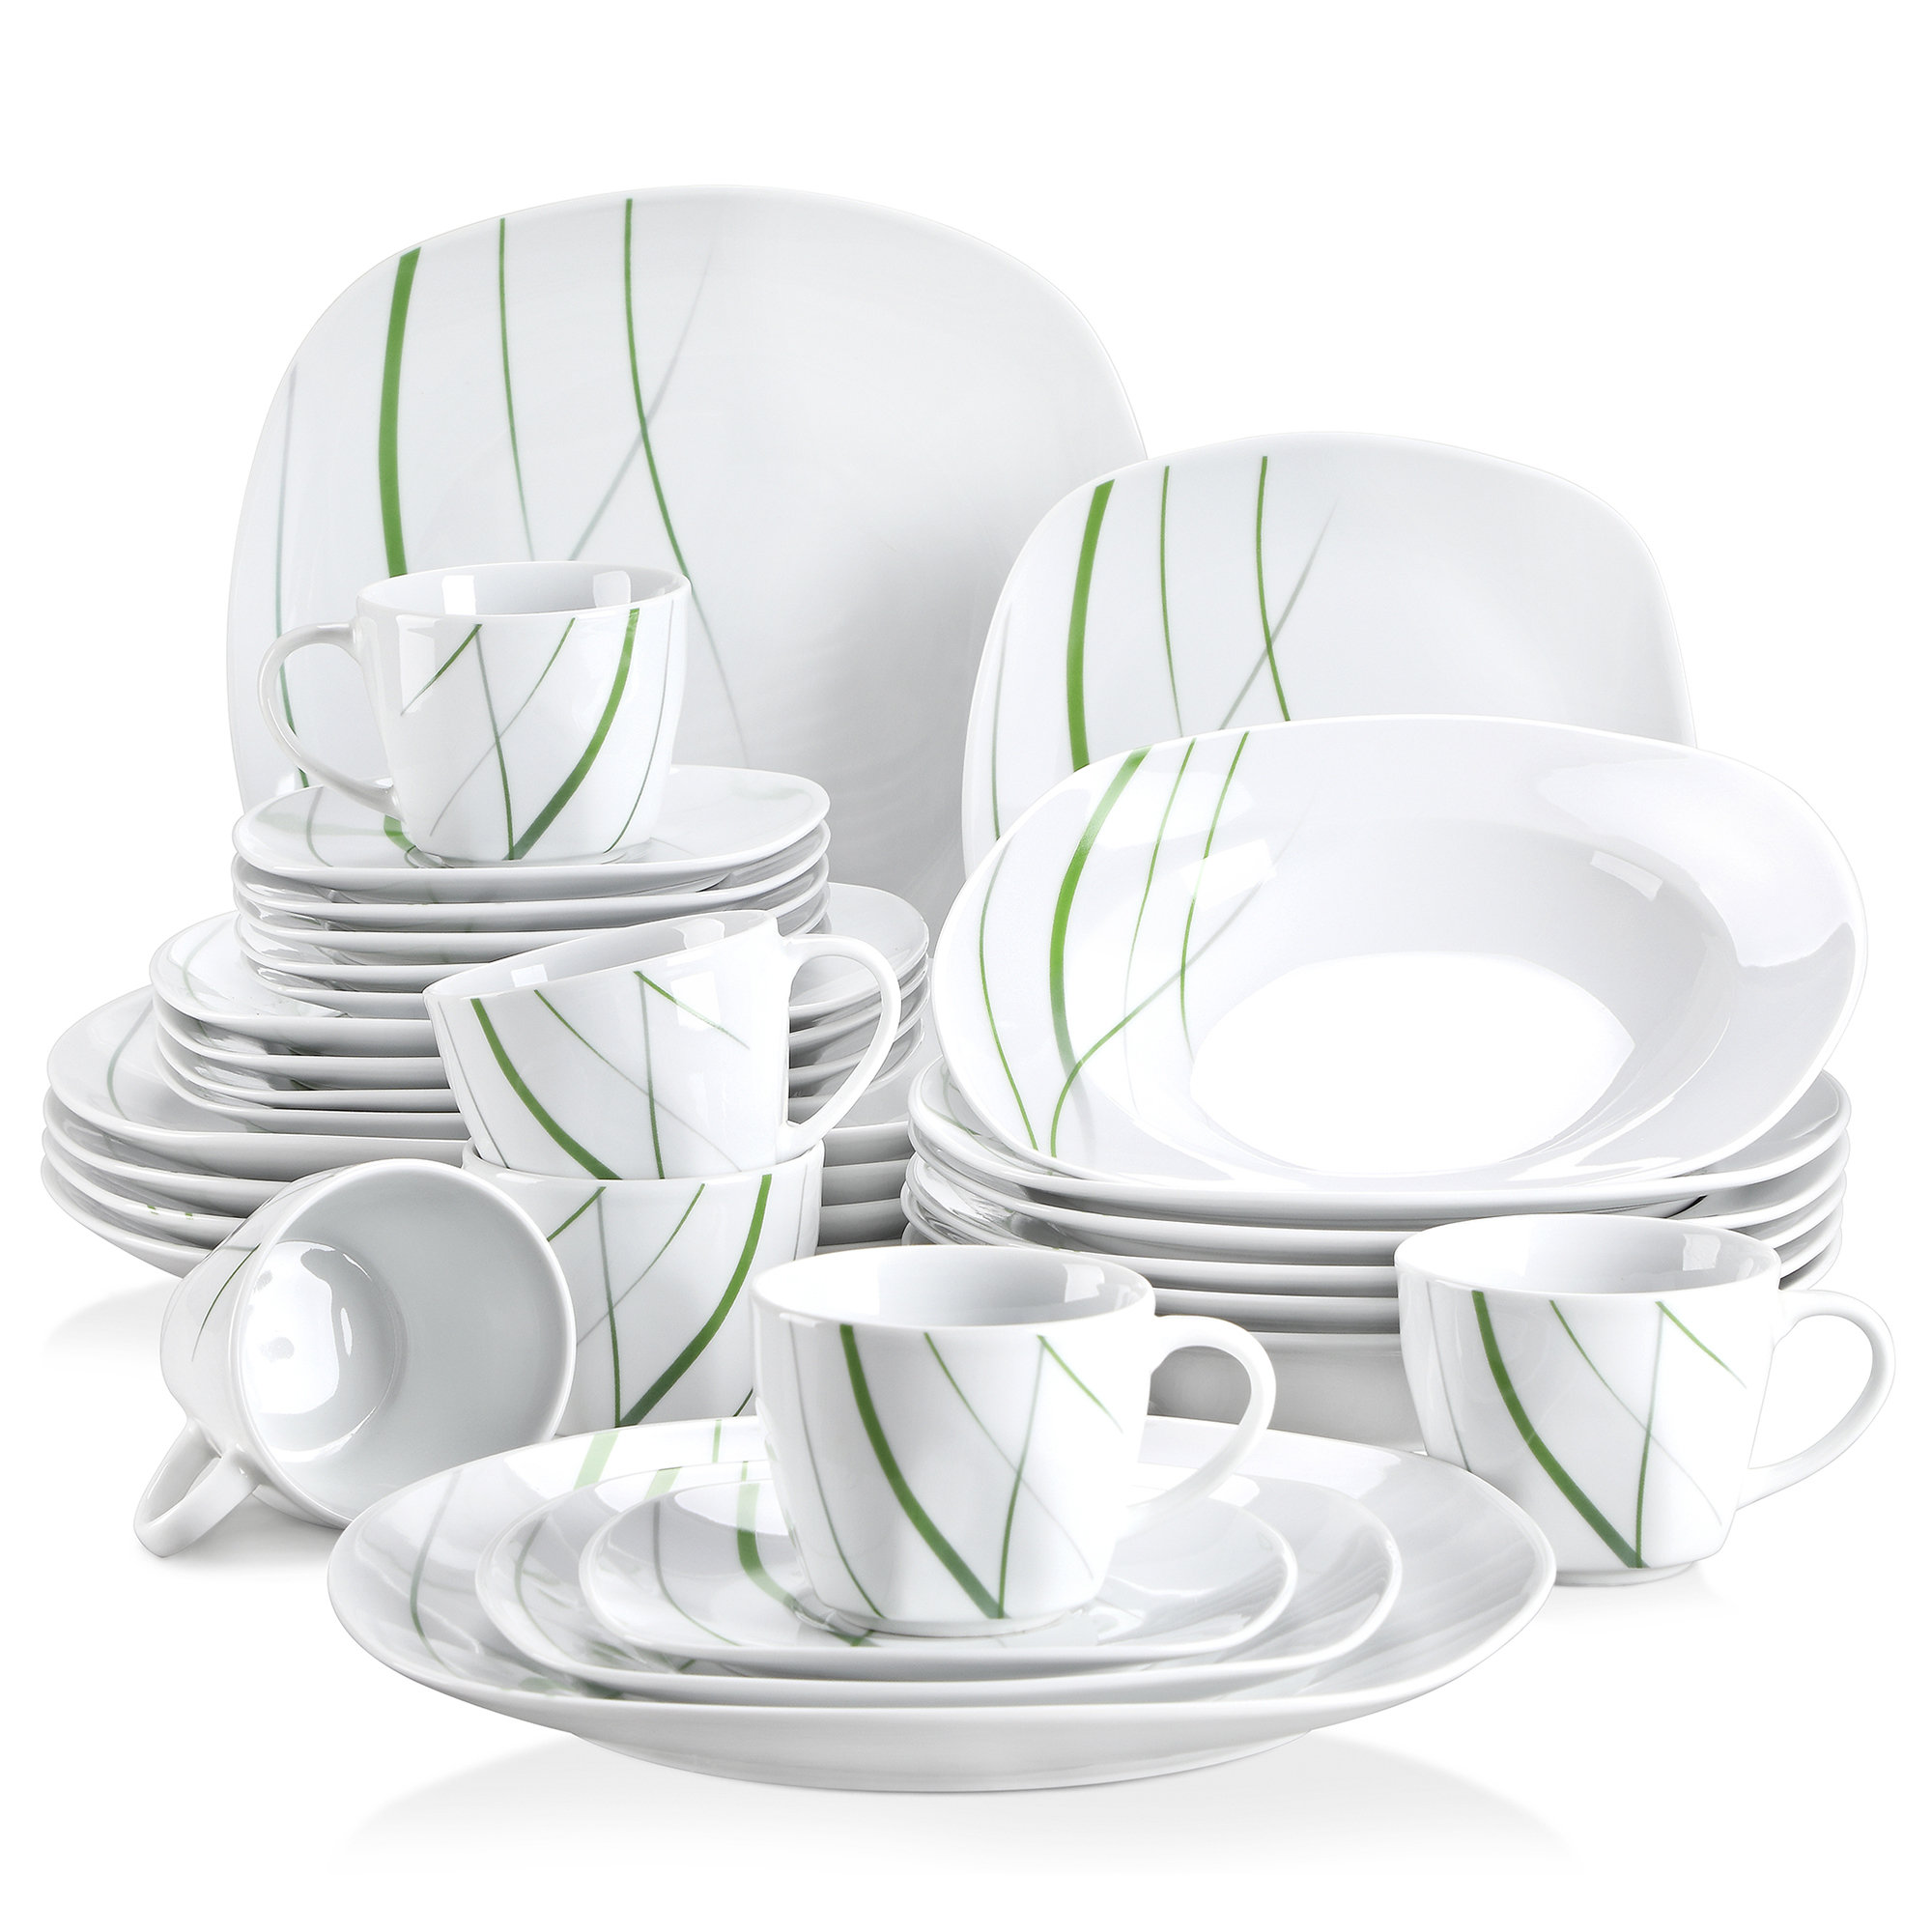 https://assets.wfcdn.com/im/71775438/compr-r85/2156/215667872/ivy-bronx-stuber-porcelain-china-dinnerware-set-service-for-6.jpg